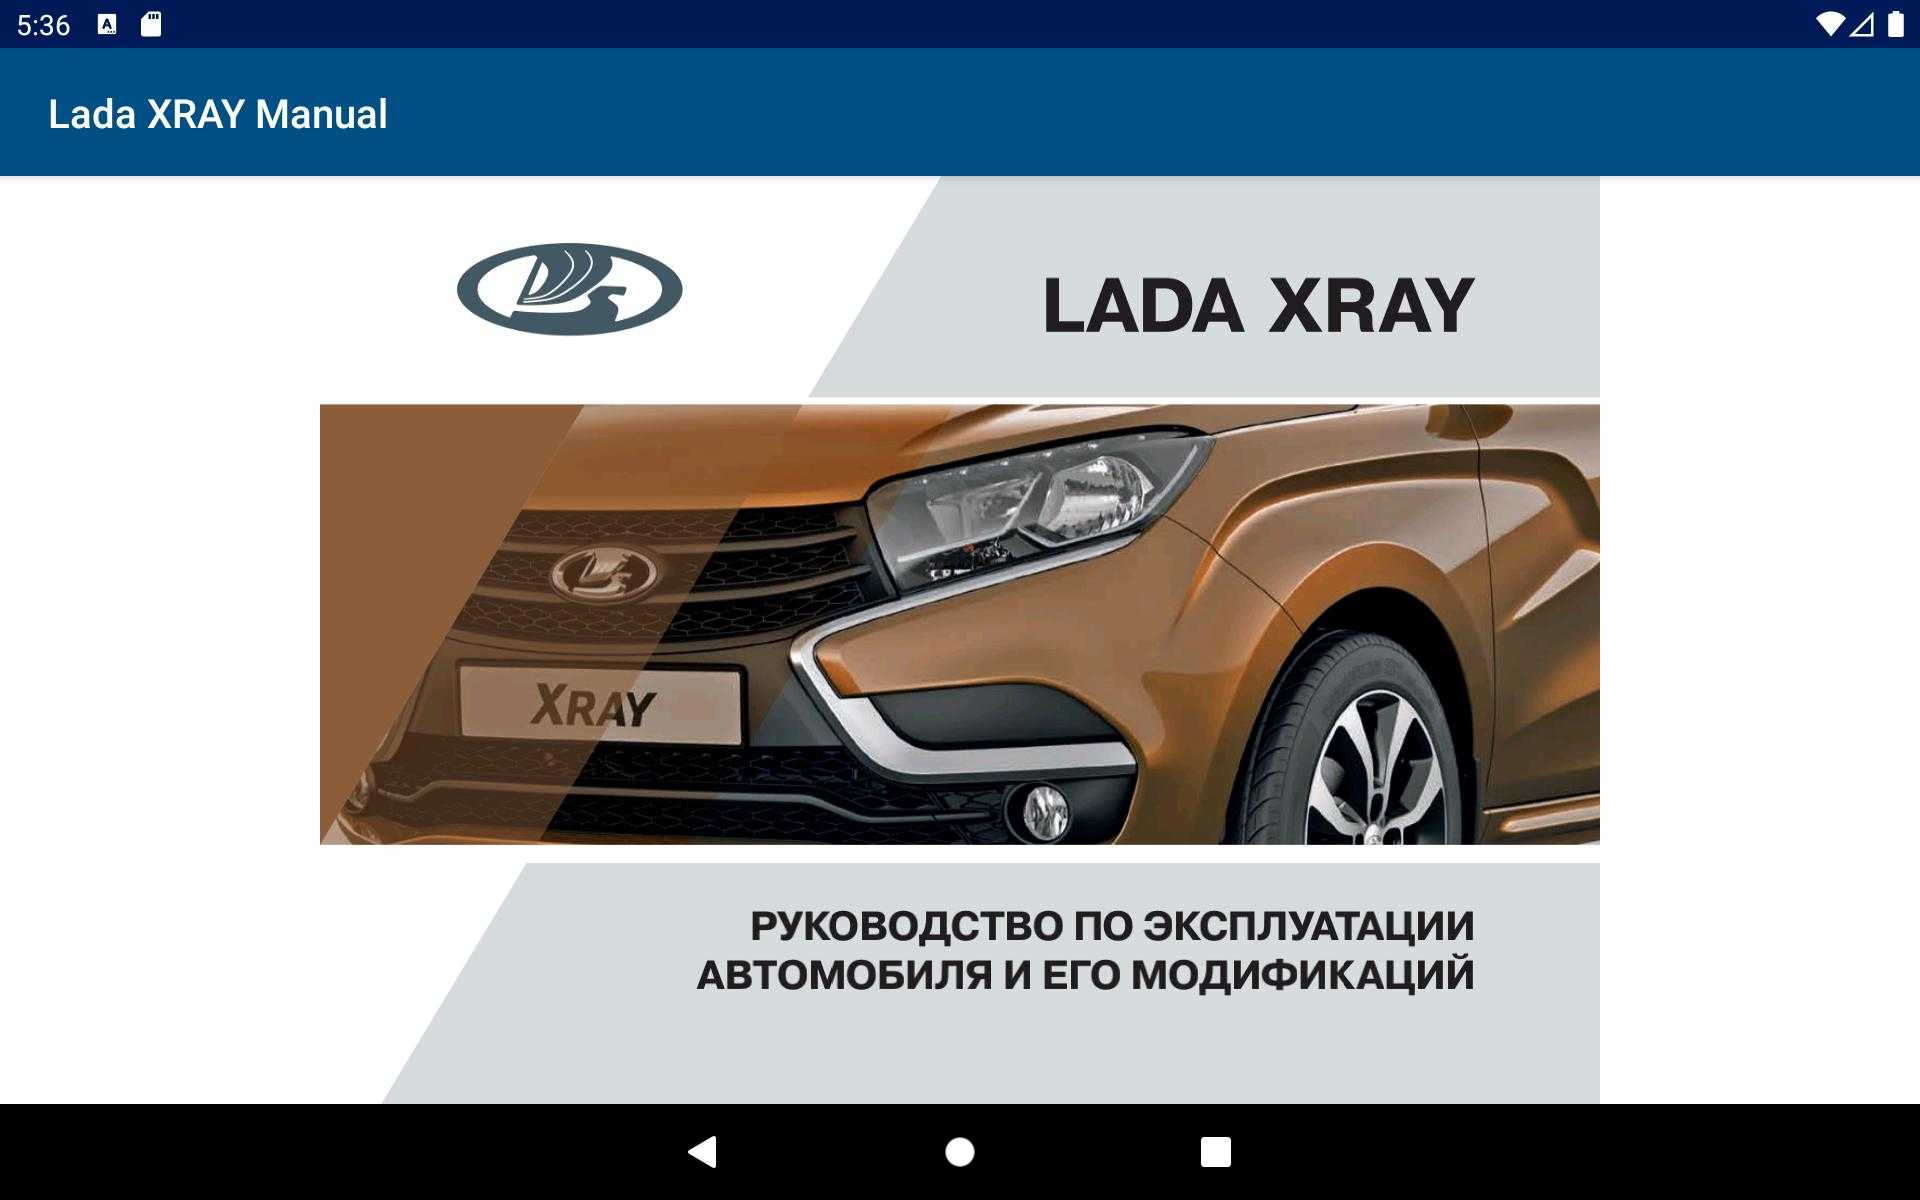 Скачать руководство: ремонт, эксплуатация лада иксрей lada xray с 2016 г.выпуска (1.6-1.8 л)